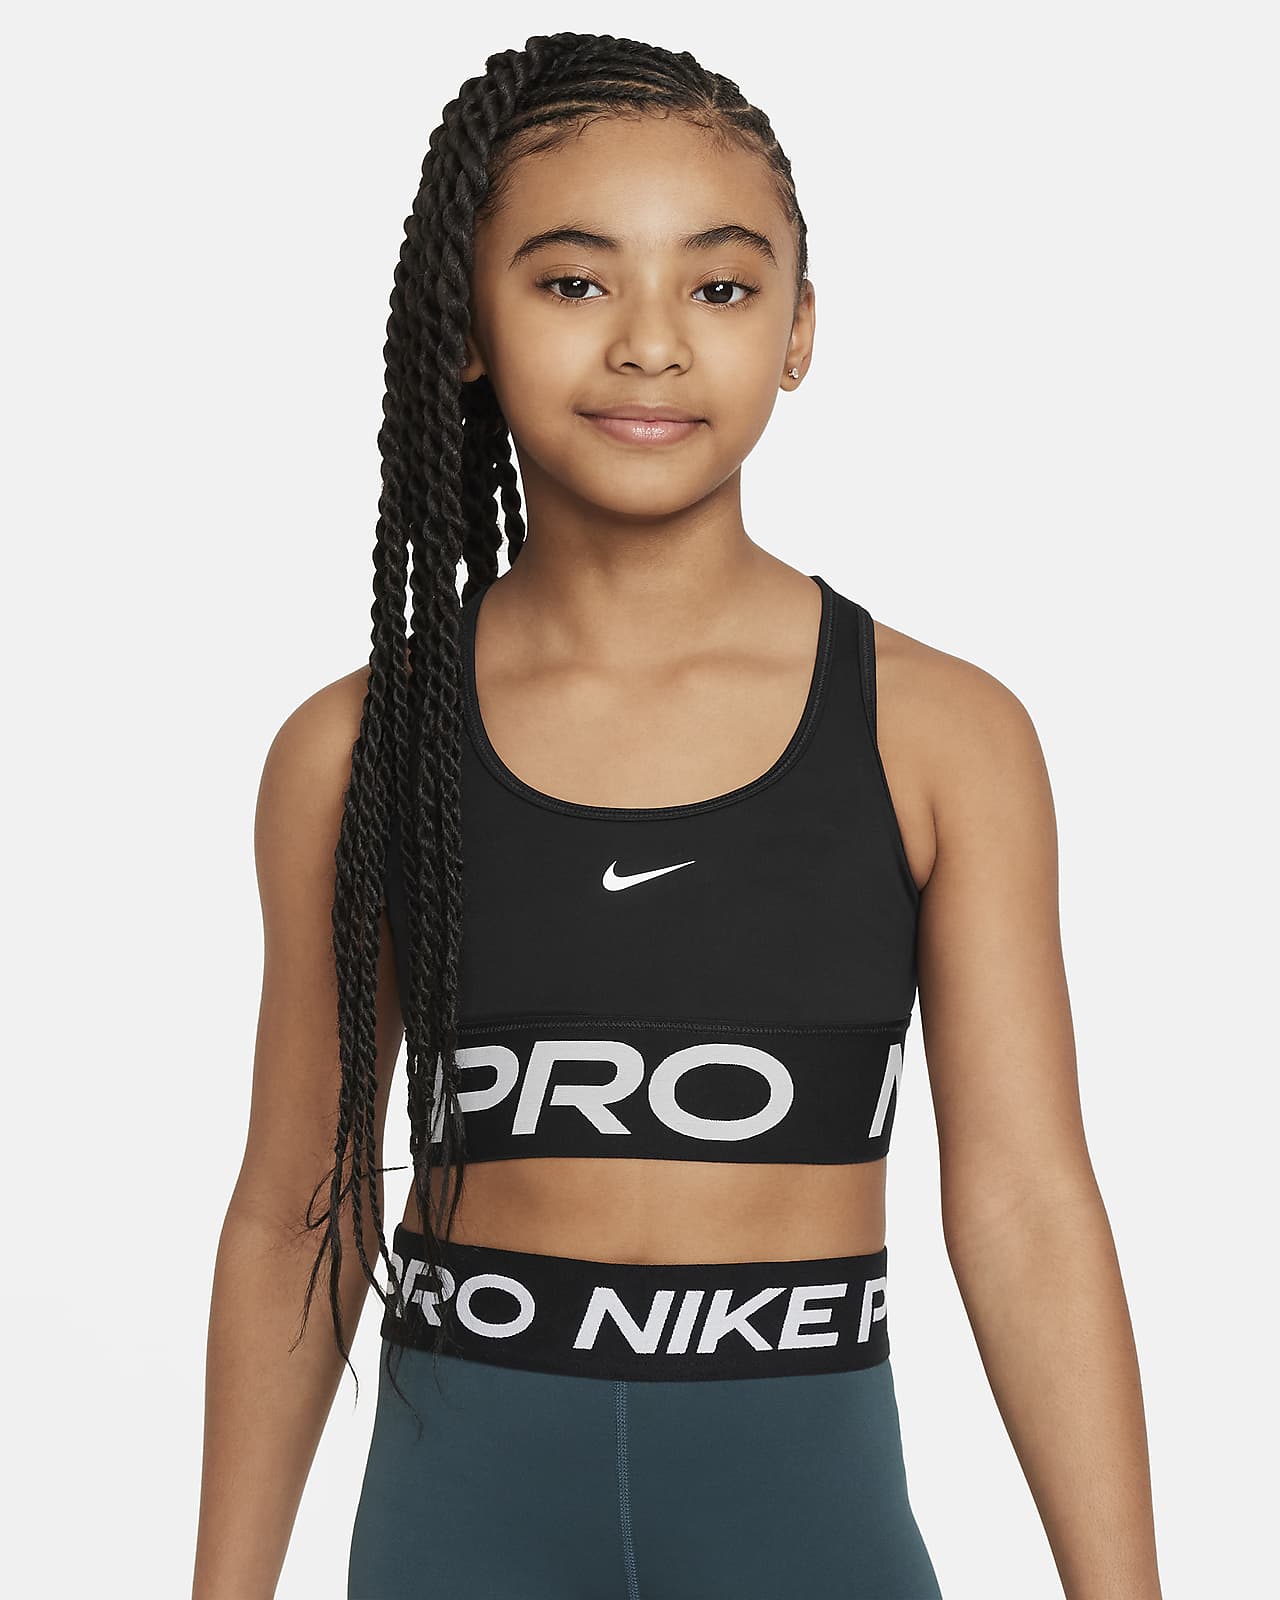 Αθλητικός στηθόδεσμος Nike Pro Swoosh για κορίτσια